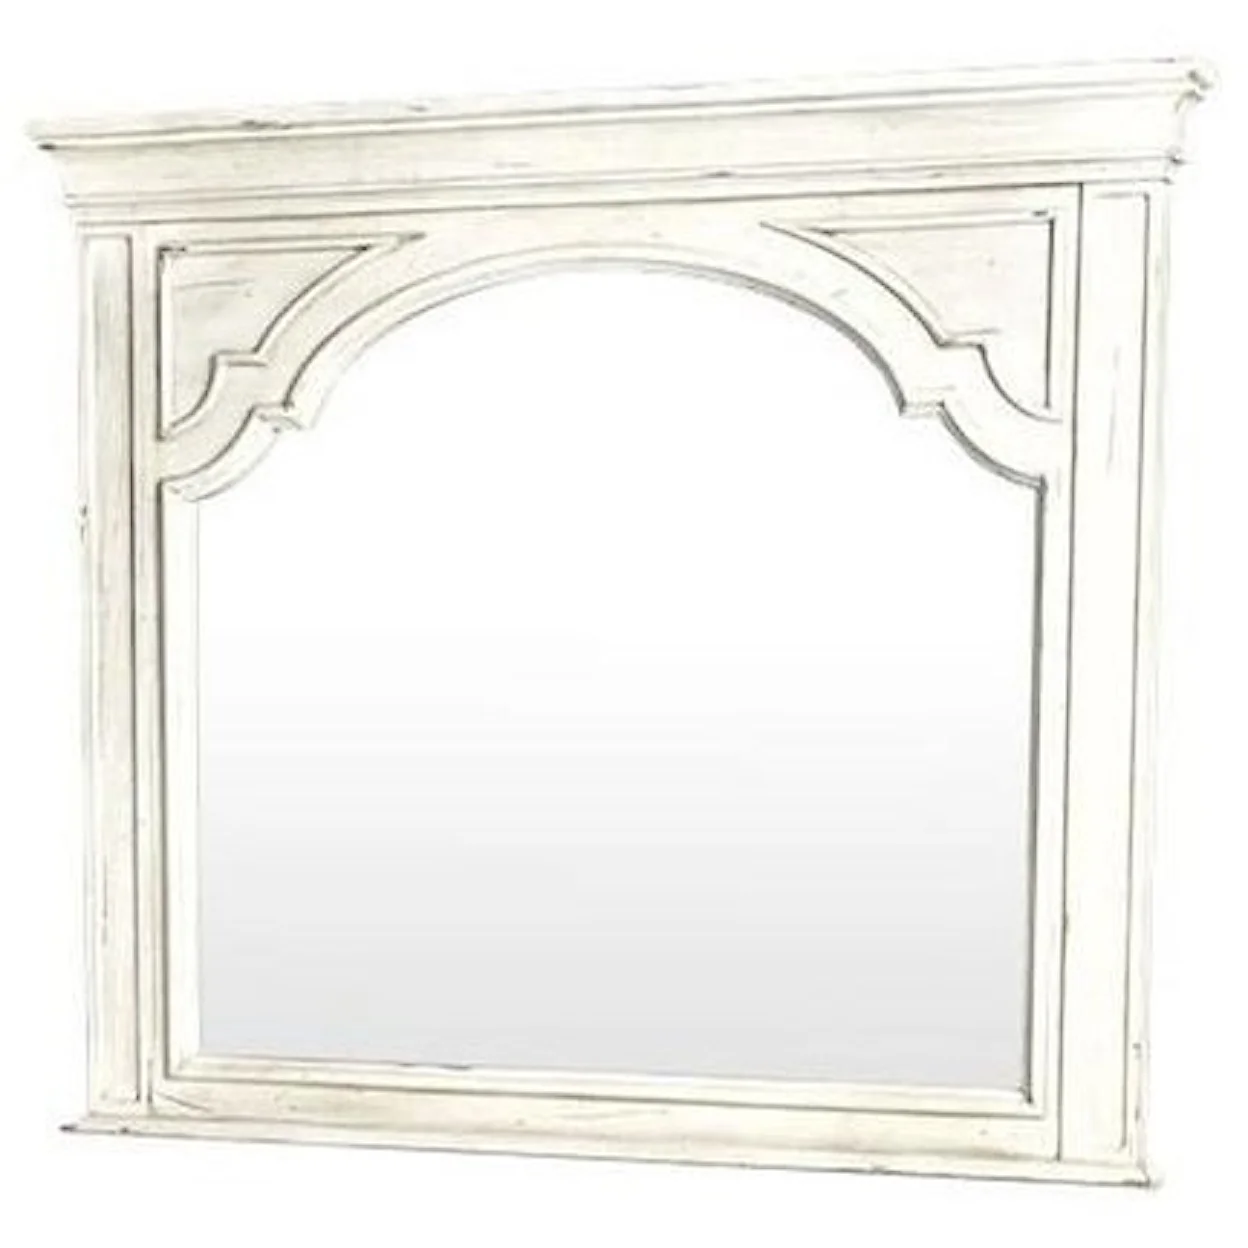 Wooden Frame Mirror